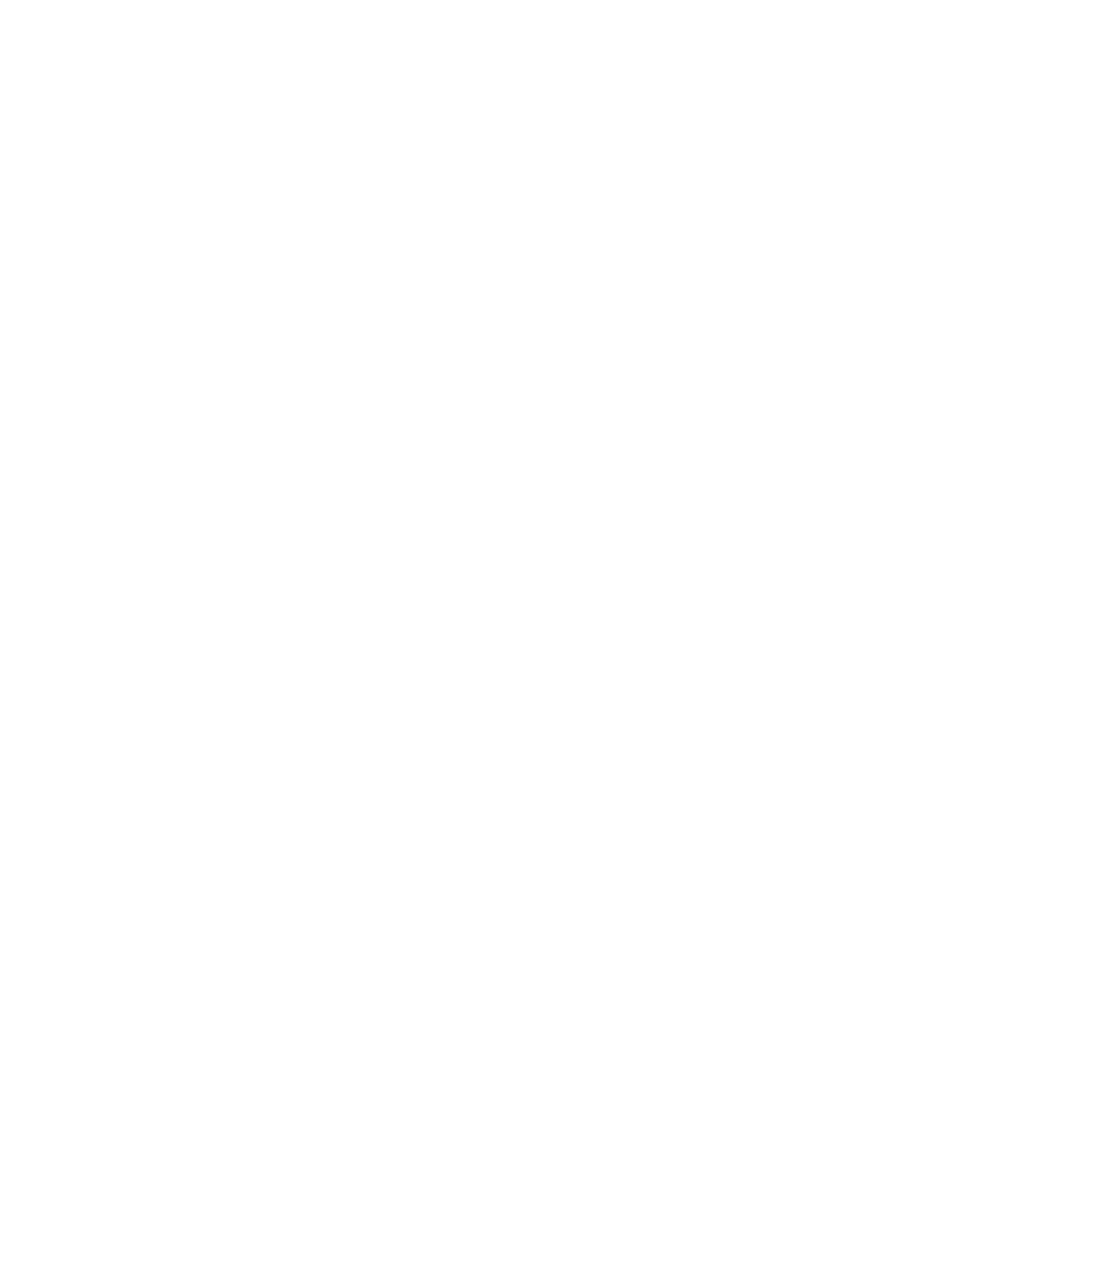 Помада Молд может быть уникален не только «носиком», но и фактурой: Глянцевые, матовые, сеточка, паутинка, различные надписи и логотипы на стиках. Многие популярные бренды используют это.